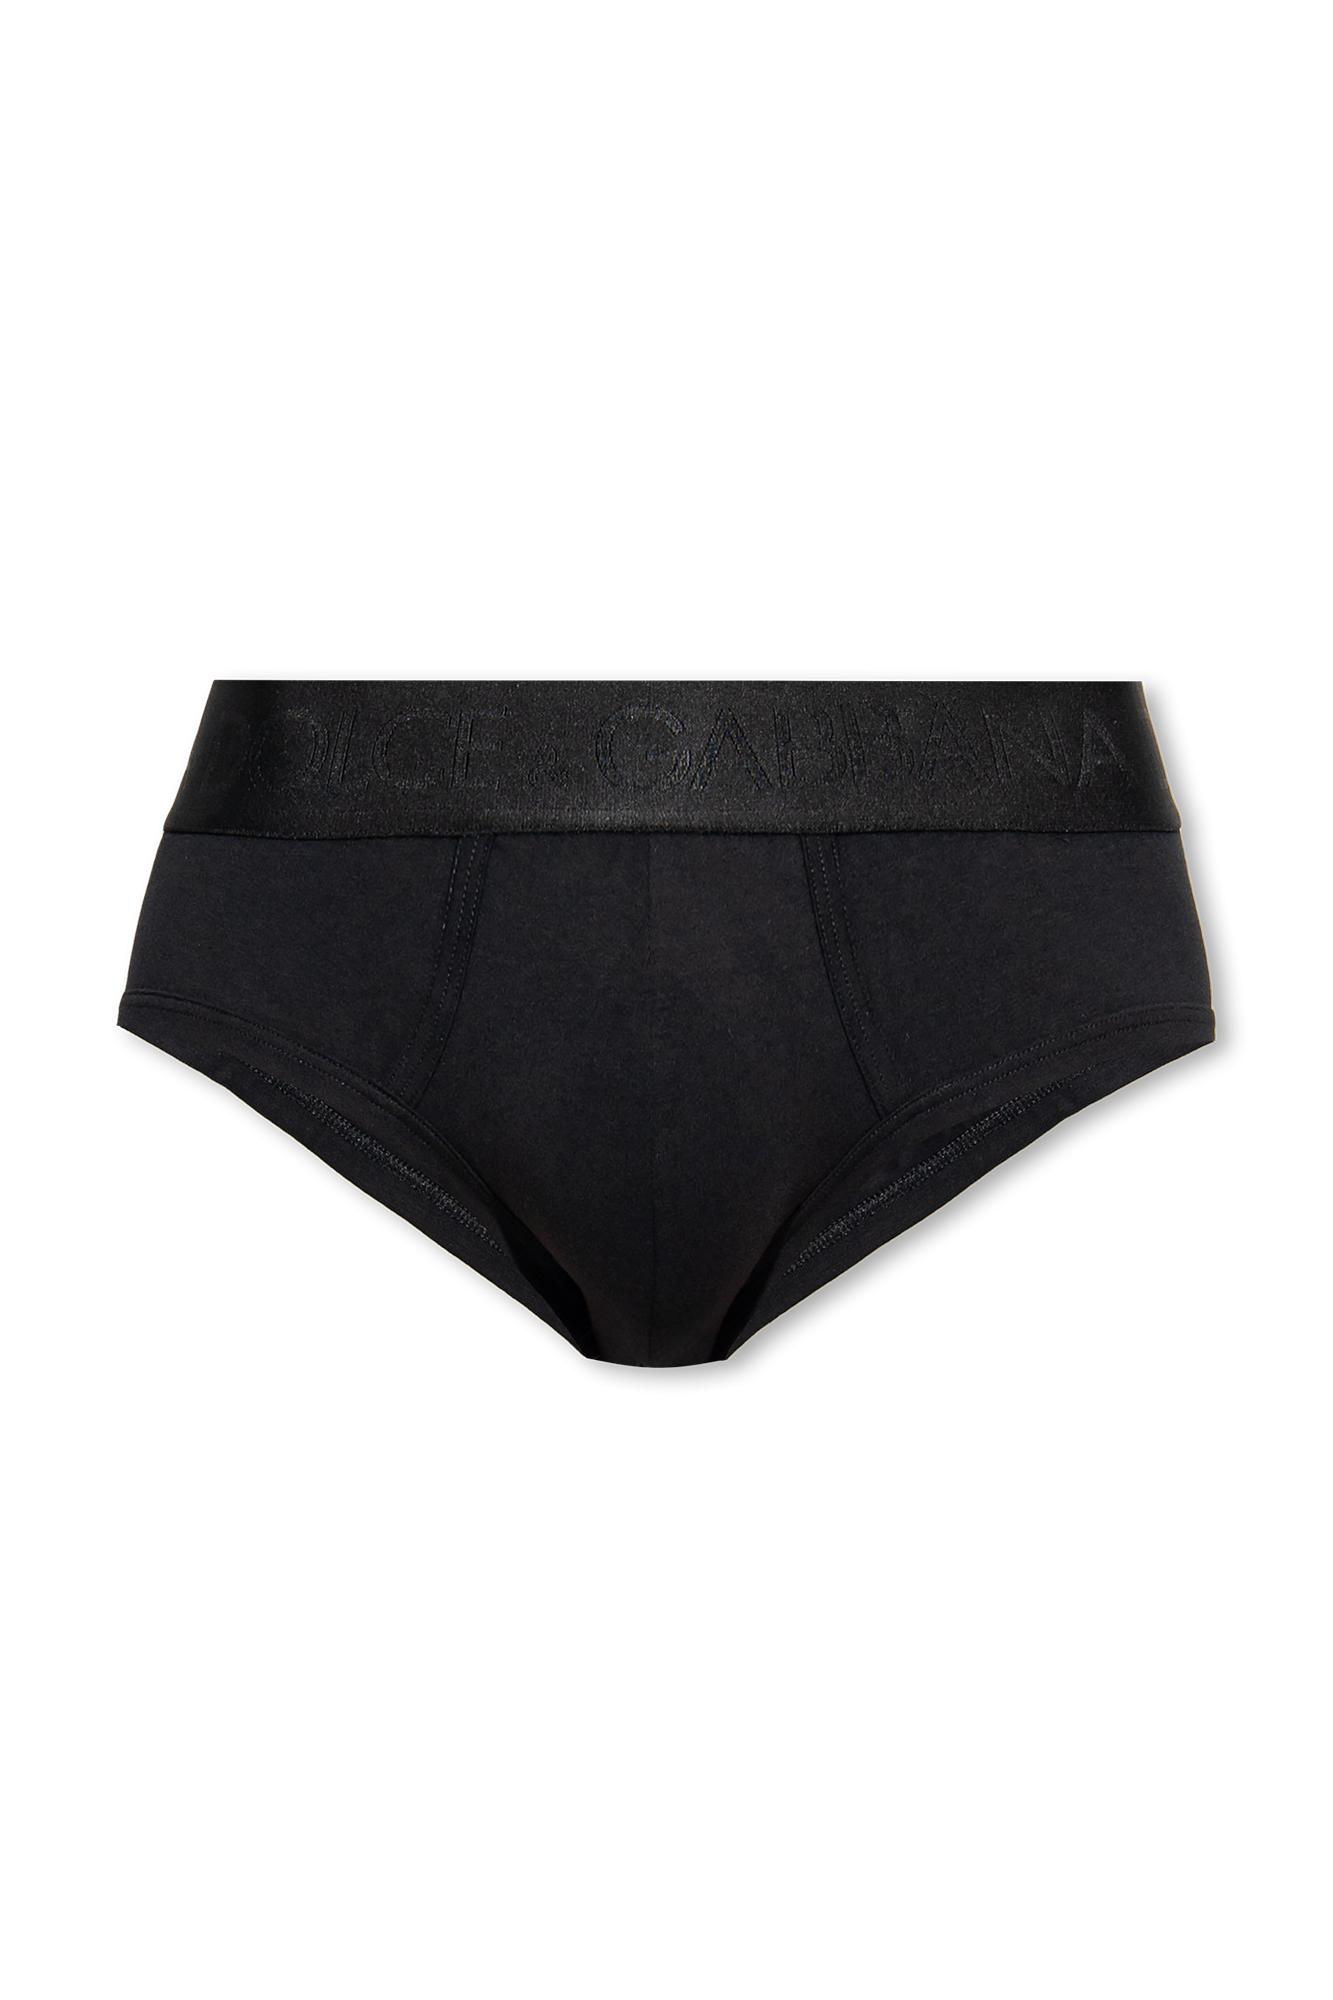 D&G black underwear